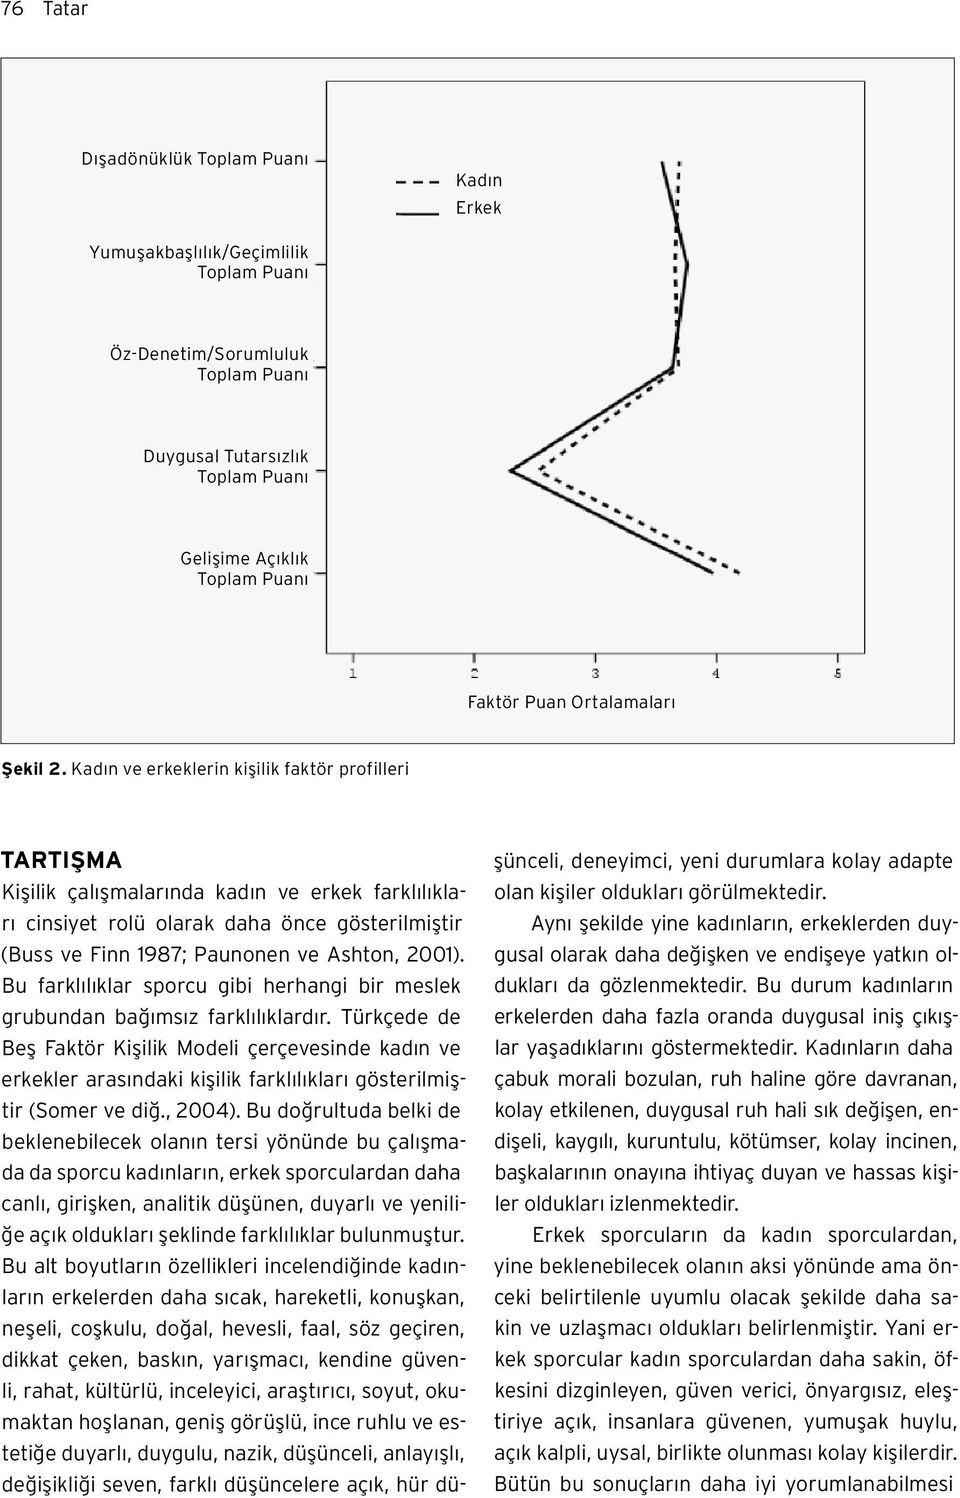 Kadın ve erkeklerin kişilik faktör profilleri TARTIŞMA Kişilik çalışmalarında kadın ve erkek farklılıkları cinsiyet rolü olarak daha önce gösterilmiştir (Buss ve Finn 1987; Paunonen ve Ashton, 2001).